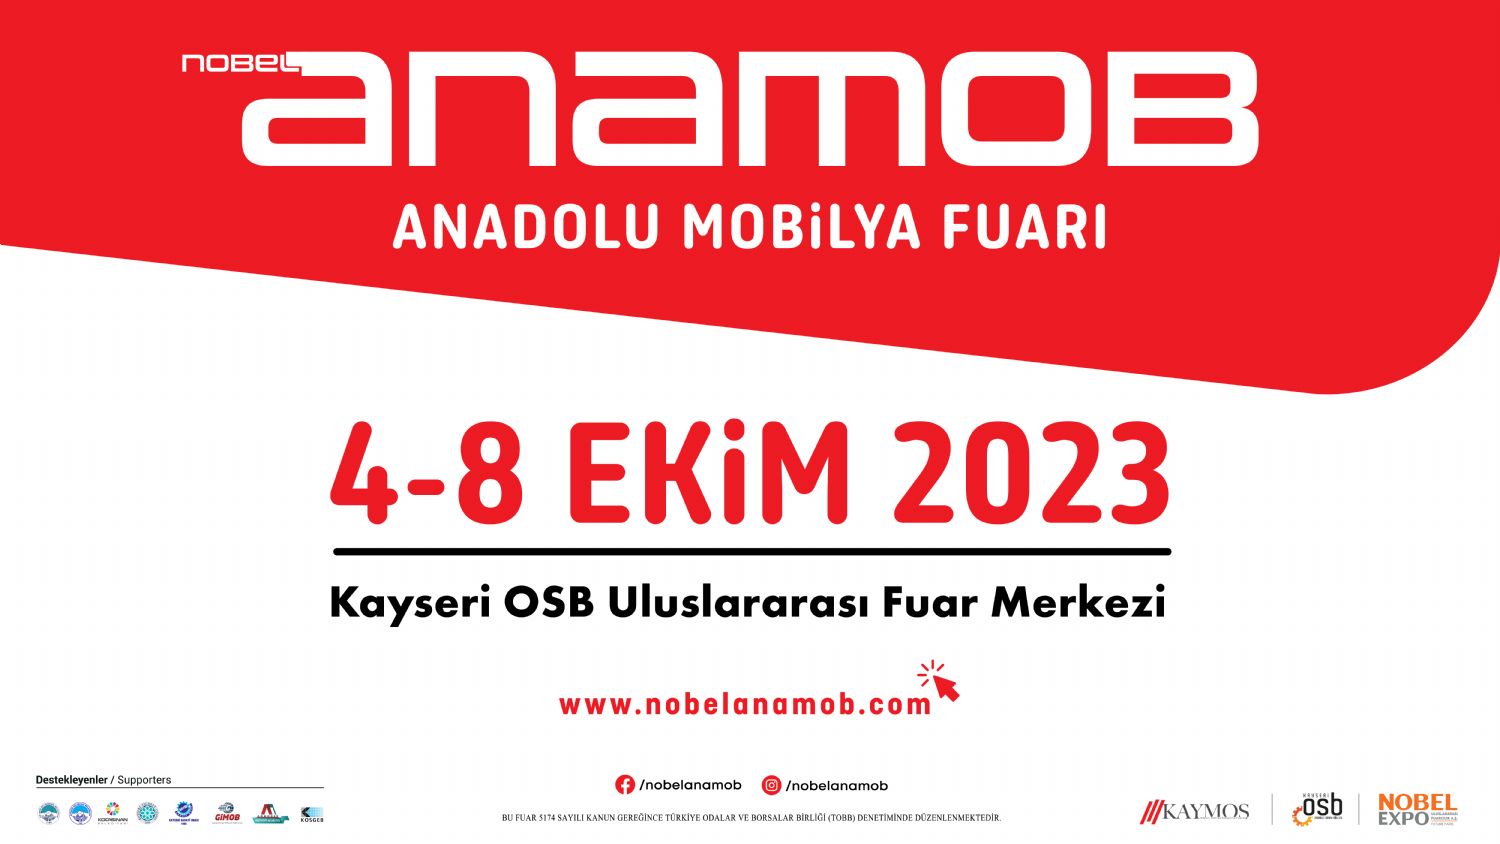 ANAMOB Anadolu Mobilya Fuarı 4-8 Ekim 2023 Kayseri OSB Uluslararası Fuar Merkezi